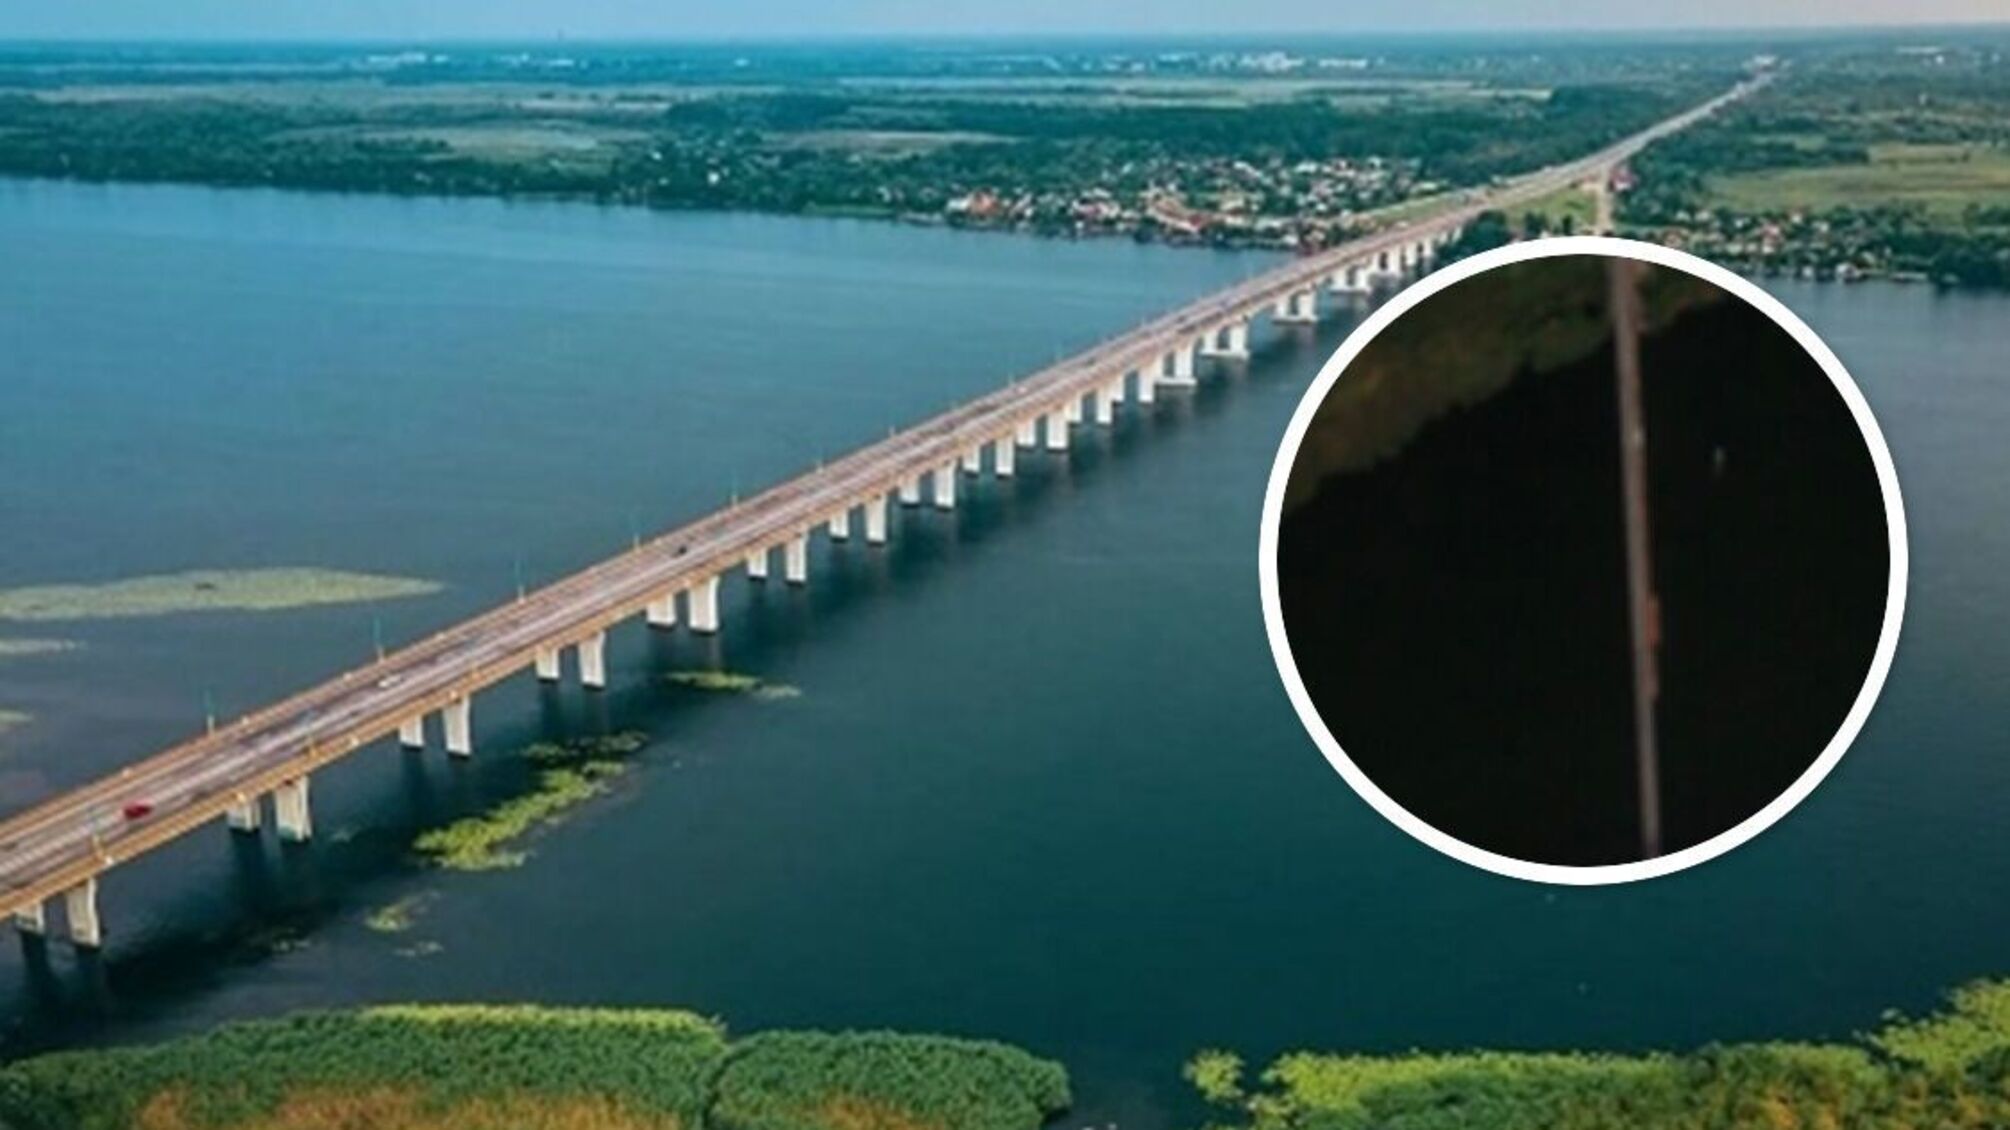 Нові знімки Антонівського мосту під Херсоном: переправу з барж розширили на 2 смуги